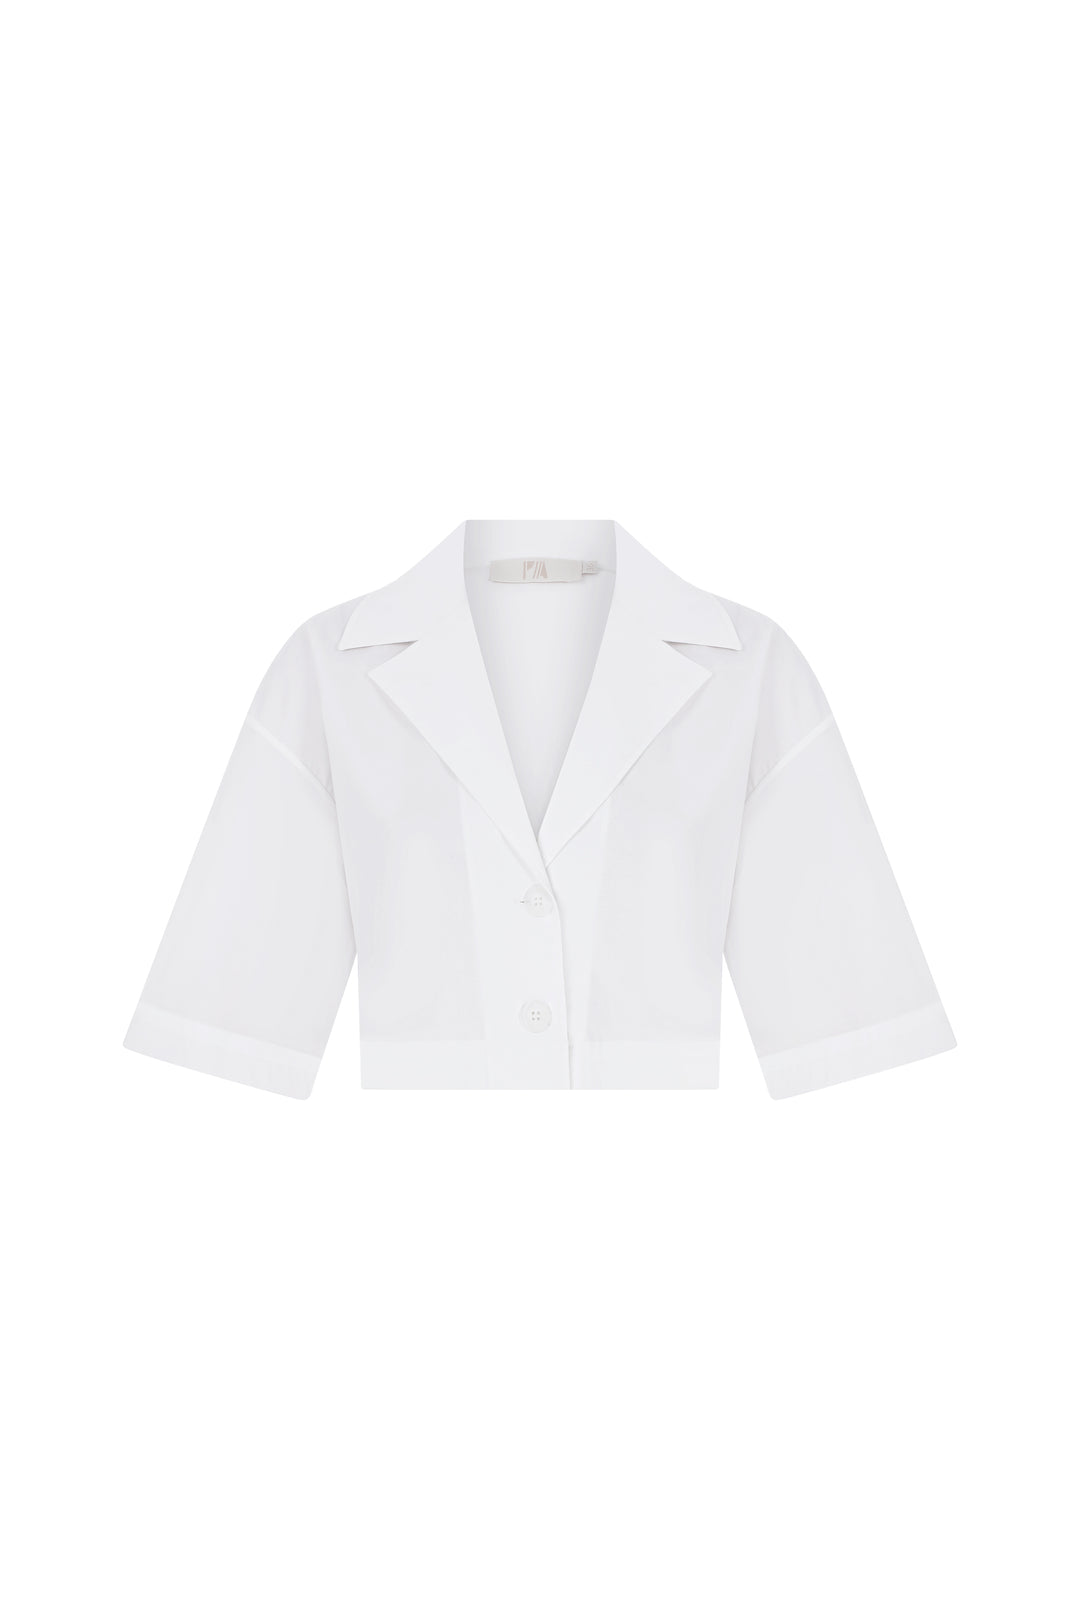 Maya - 'Sophisti' White Short Sleeve Crop Shirt